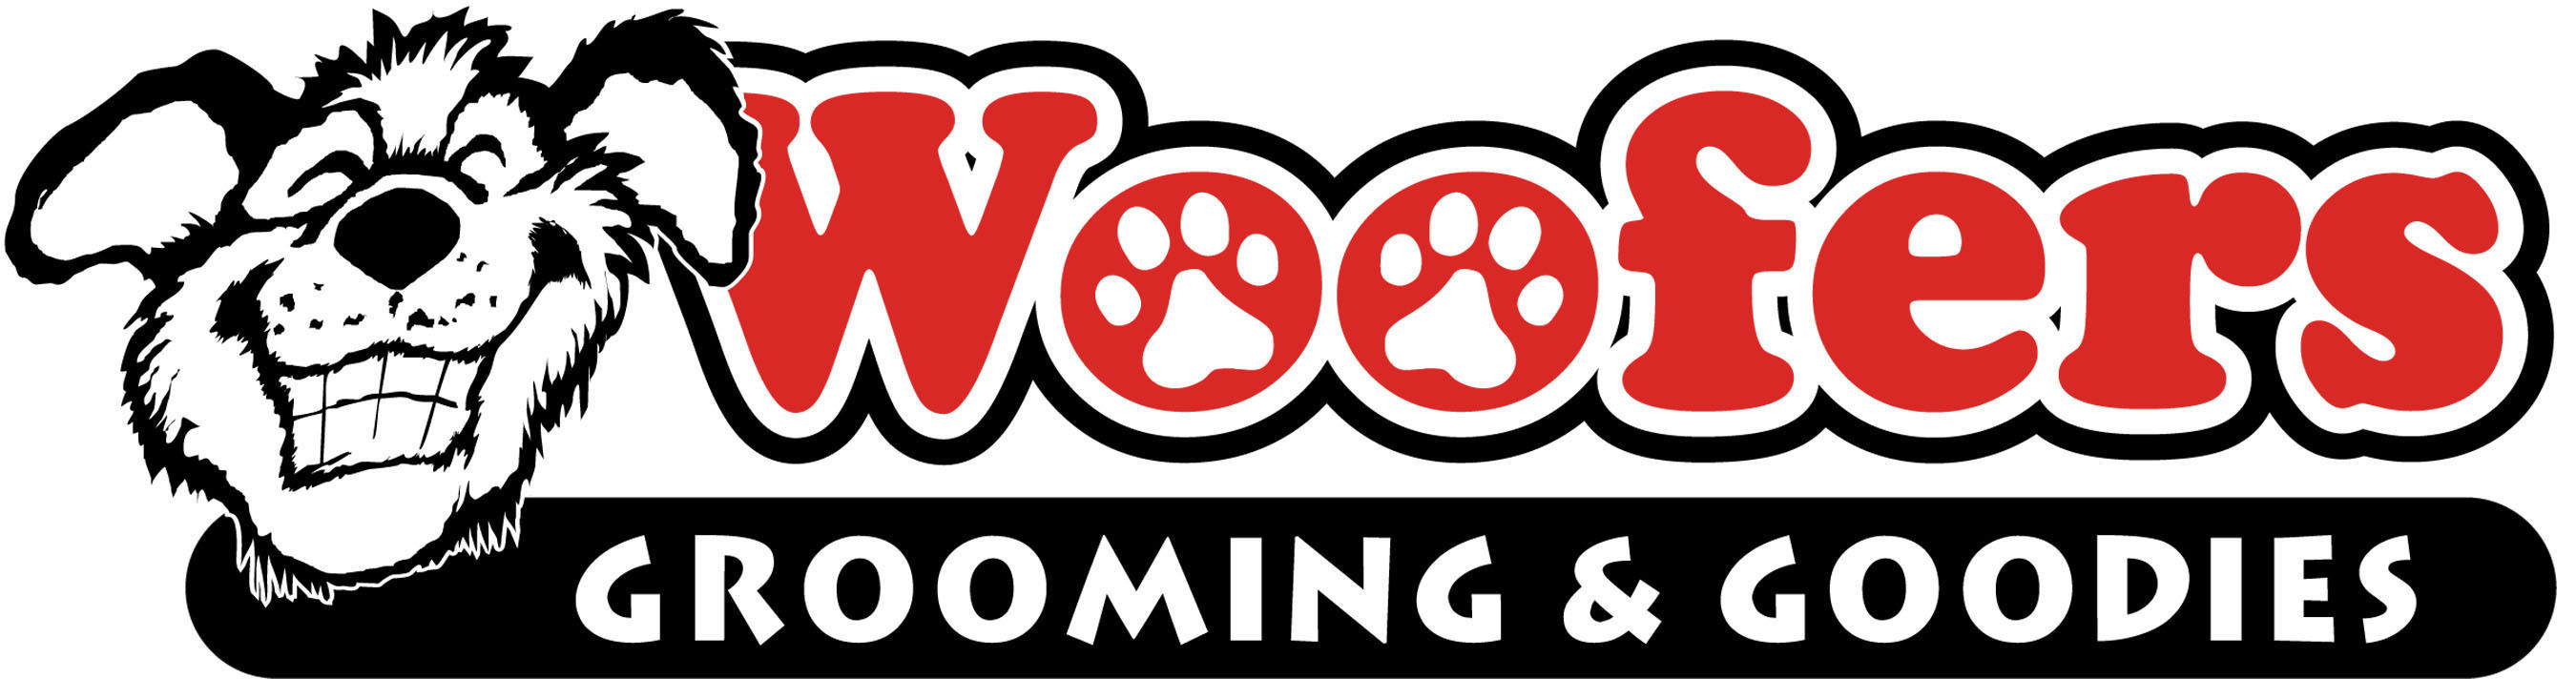 Woofers Grooming & Goodies Logo.